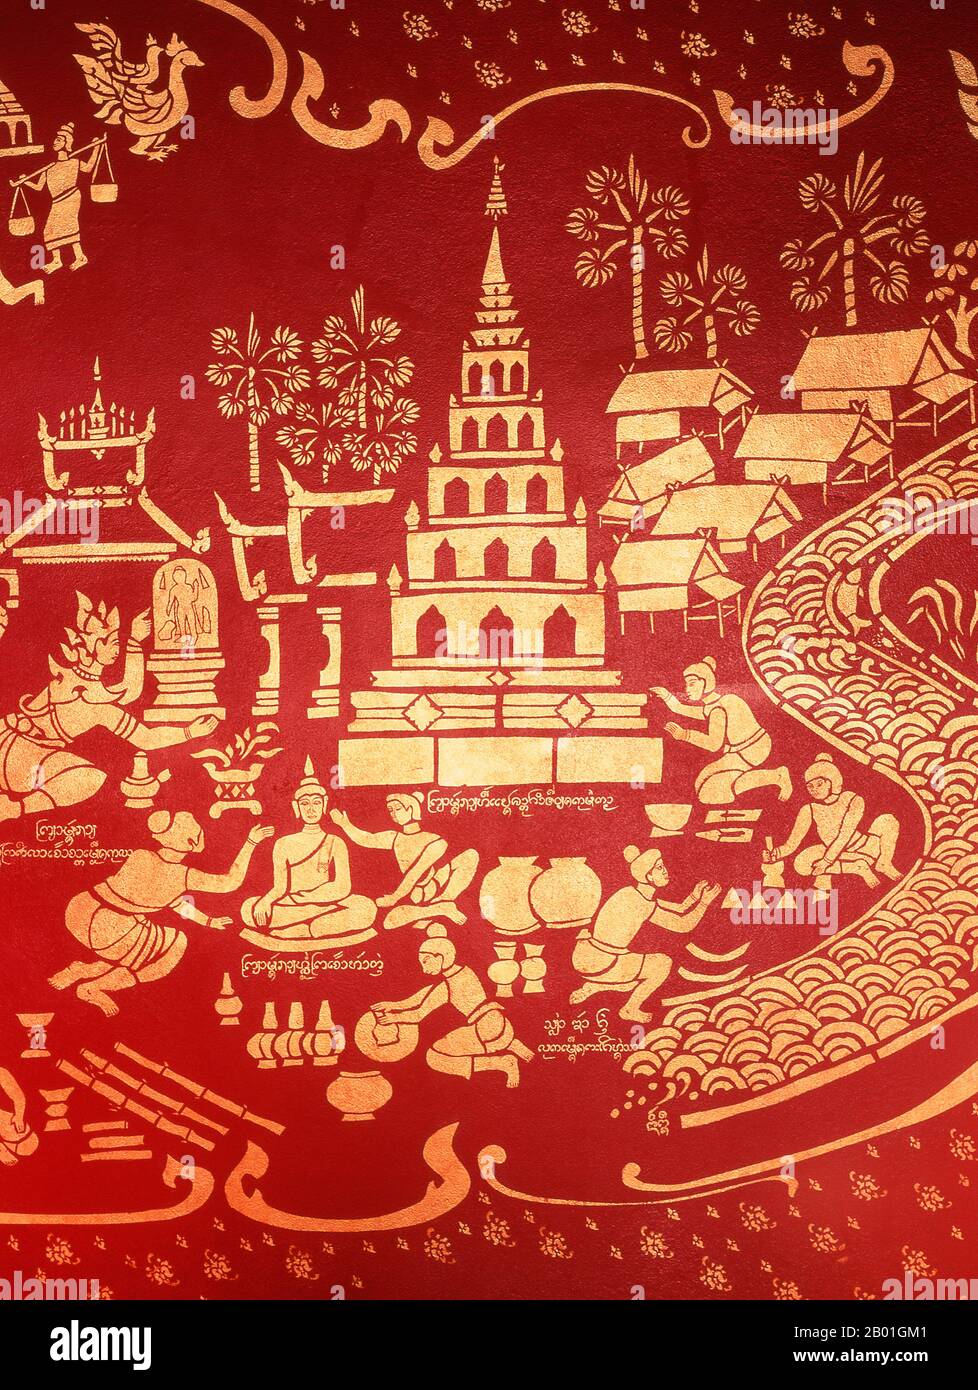 Thaïlande: Peintures murales dans le viharn principal, Wat Chiang Man, Chiang Mai. Wat Chiang Man (Chiang Mun) a été construit en 1297 EC et est considéré comme le plus ancien temple de Chiang Mai. Il a été construit sur l'endroit qui avait été utilisé par le roi Mangrai comme camp pendant la construction de sa nouvelle capitale Chiang Mai. Chiang Mai (signifiant « nouvelle ville »), parfois écrit comme « Chiengmai » ou « Chiangmai », est la ville la plus importante et la plus importante sur le plan culturel du nord de la Thaïlande. Le roi Mengrai fonda la ville de Chiang Mai en 1296, et il succéda à Chiang Rai comme capitale du royaume de Lanna. Banque D'Images